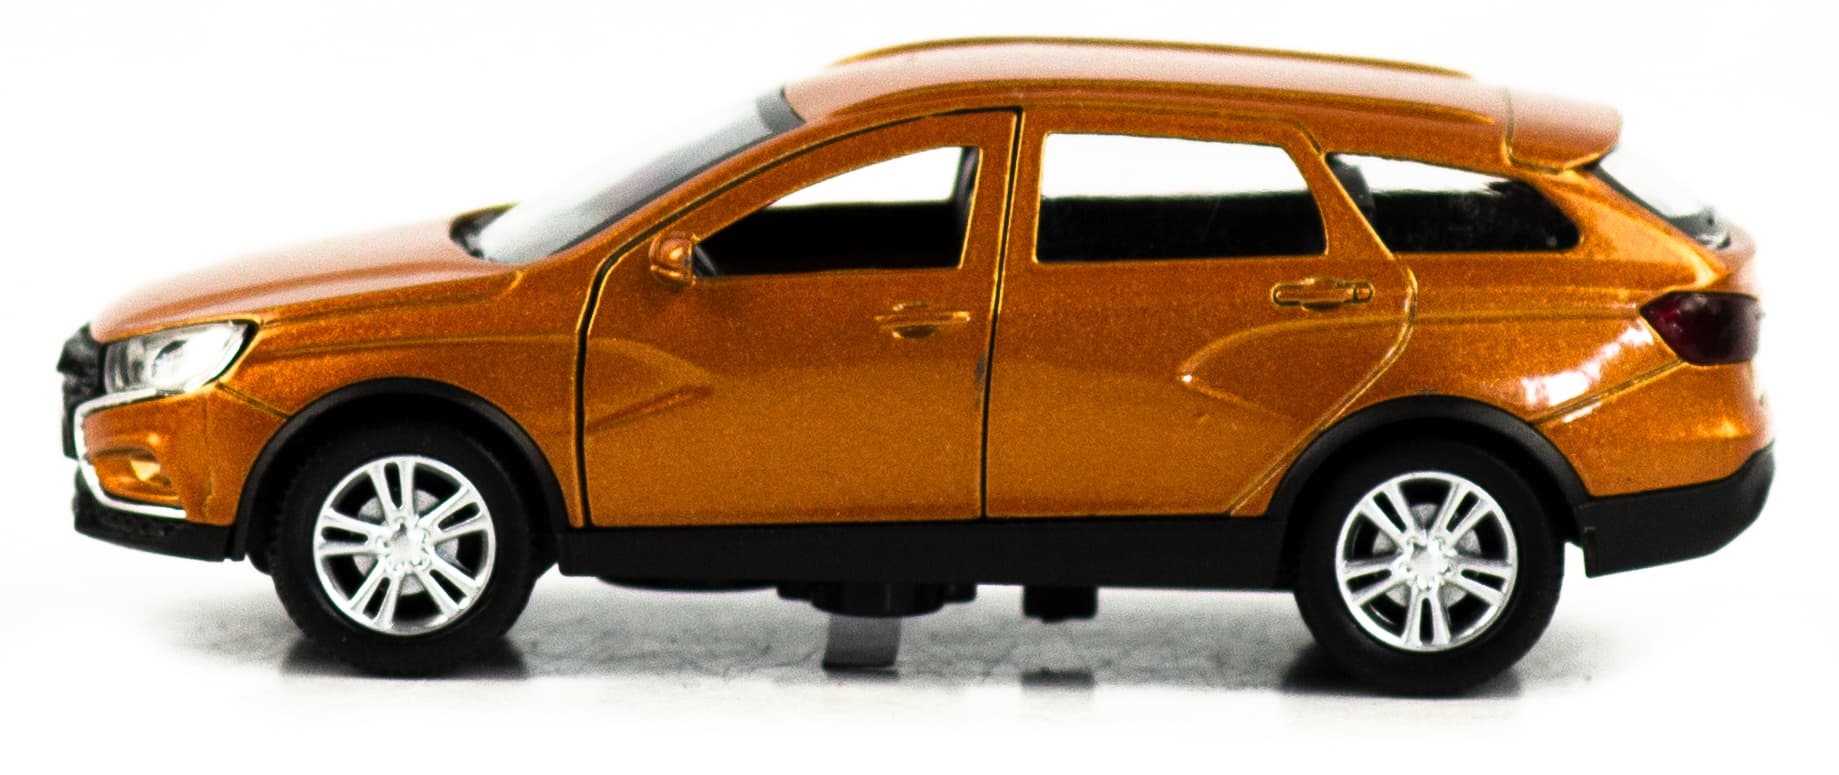 Машинка металлическая 1:32 «Vesta» А183-184-12Д, инерционная, свет, звук / Оранжевый